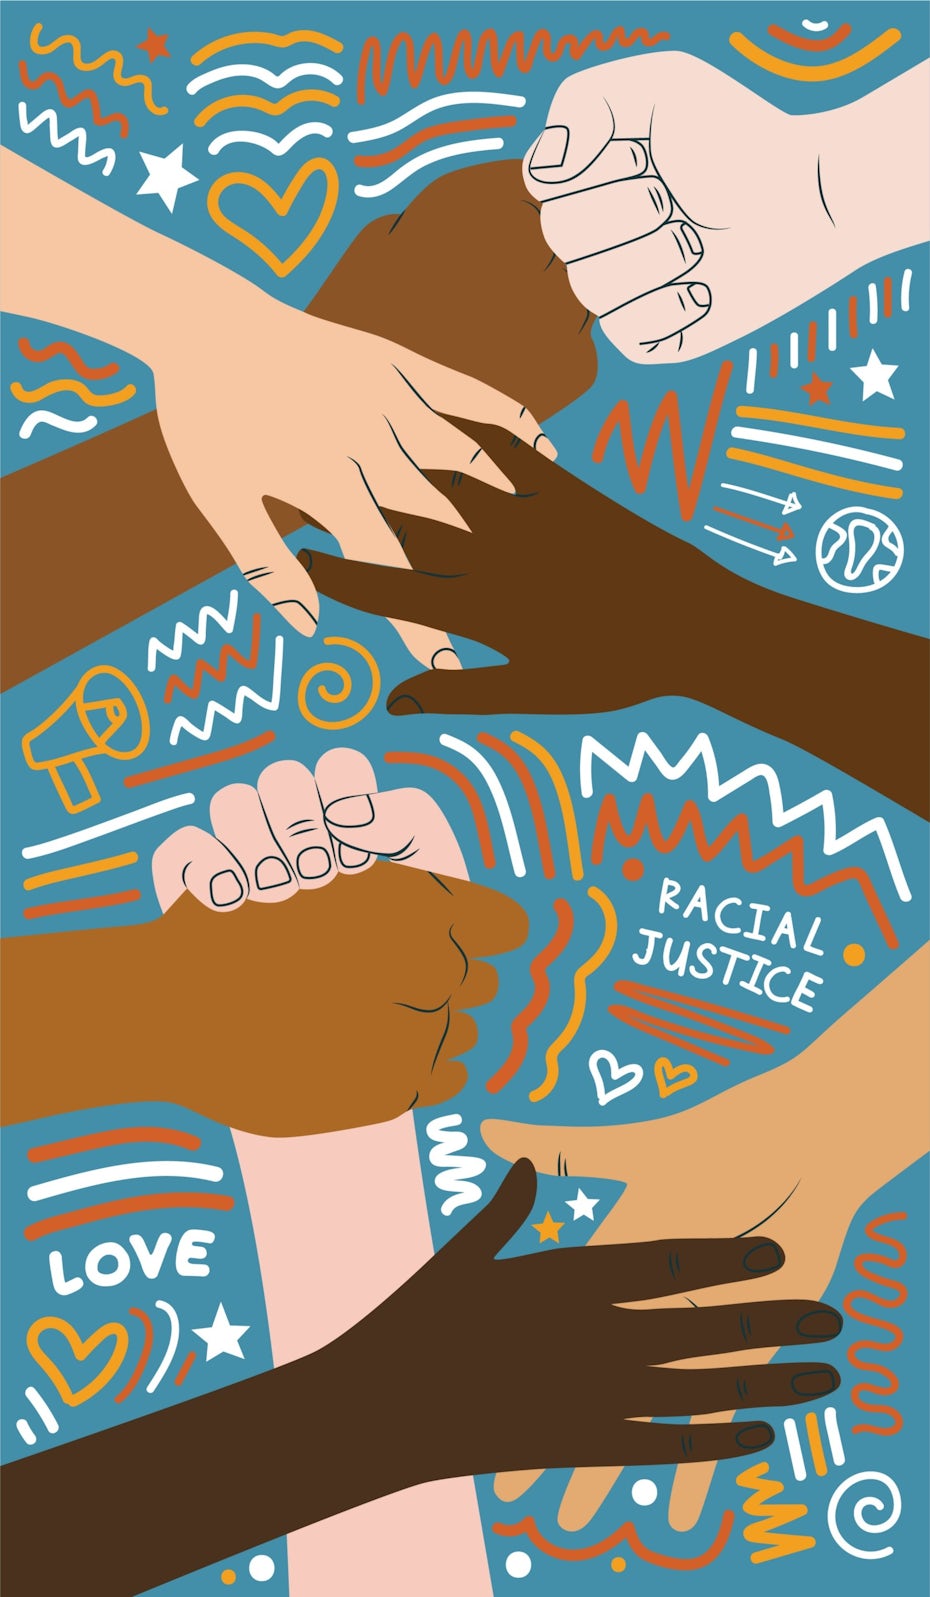 Diseño de cartel ilustrado para la justicia racial.